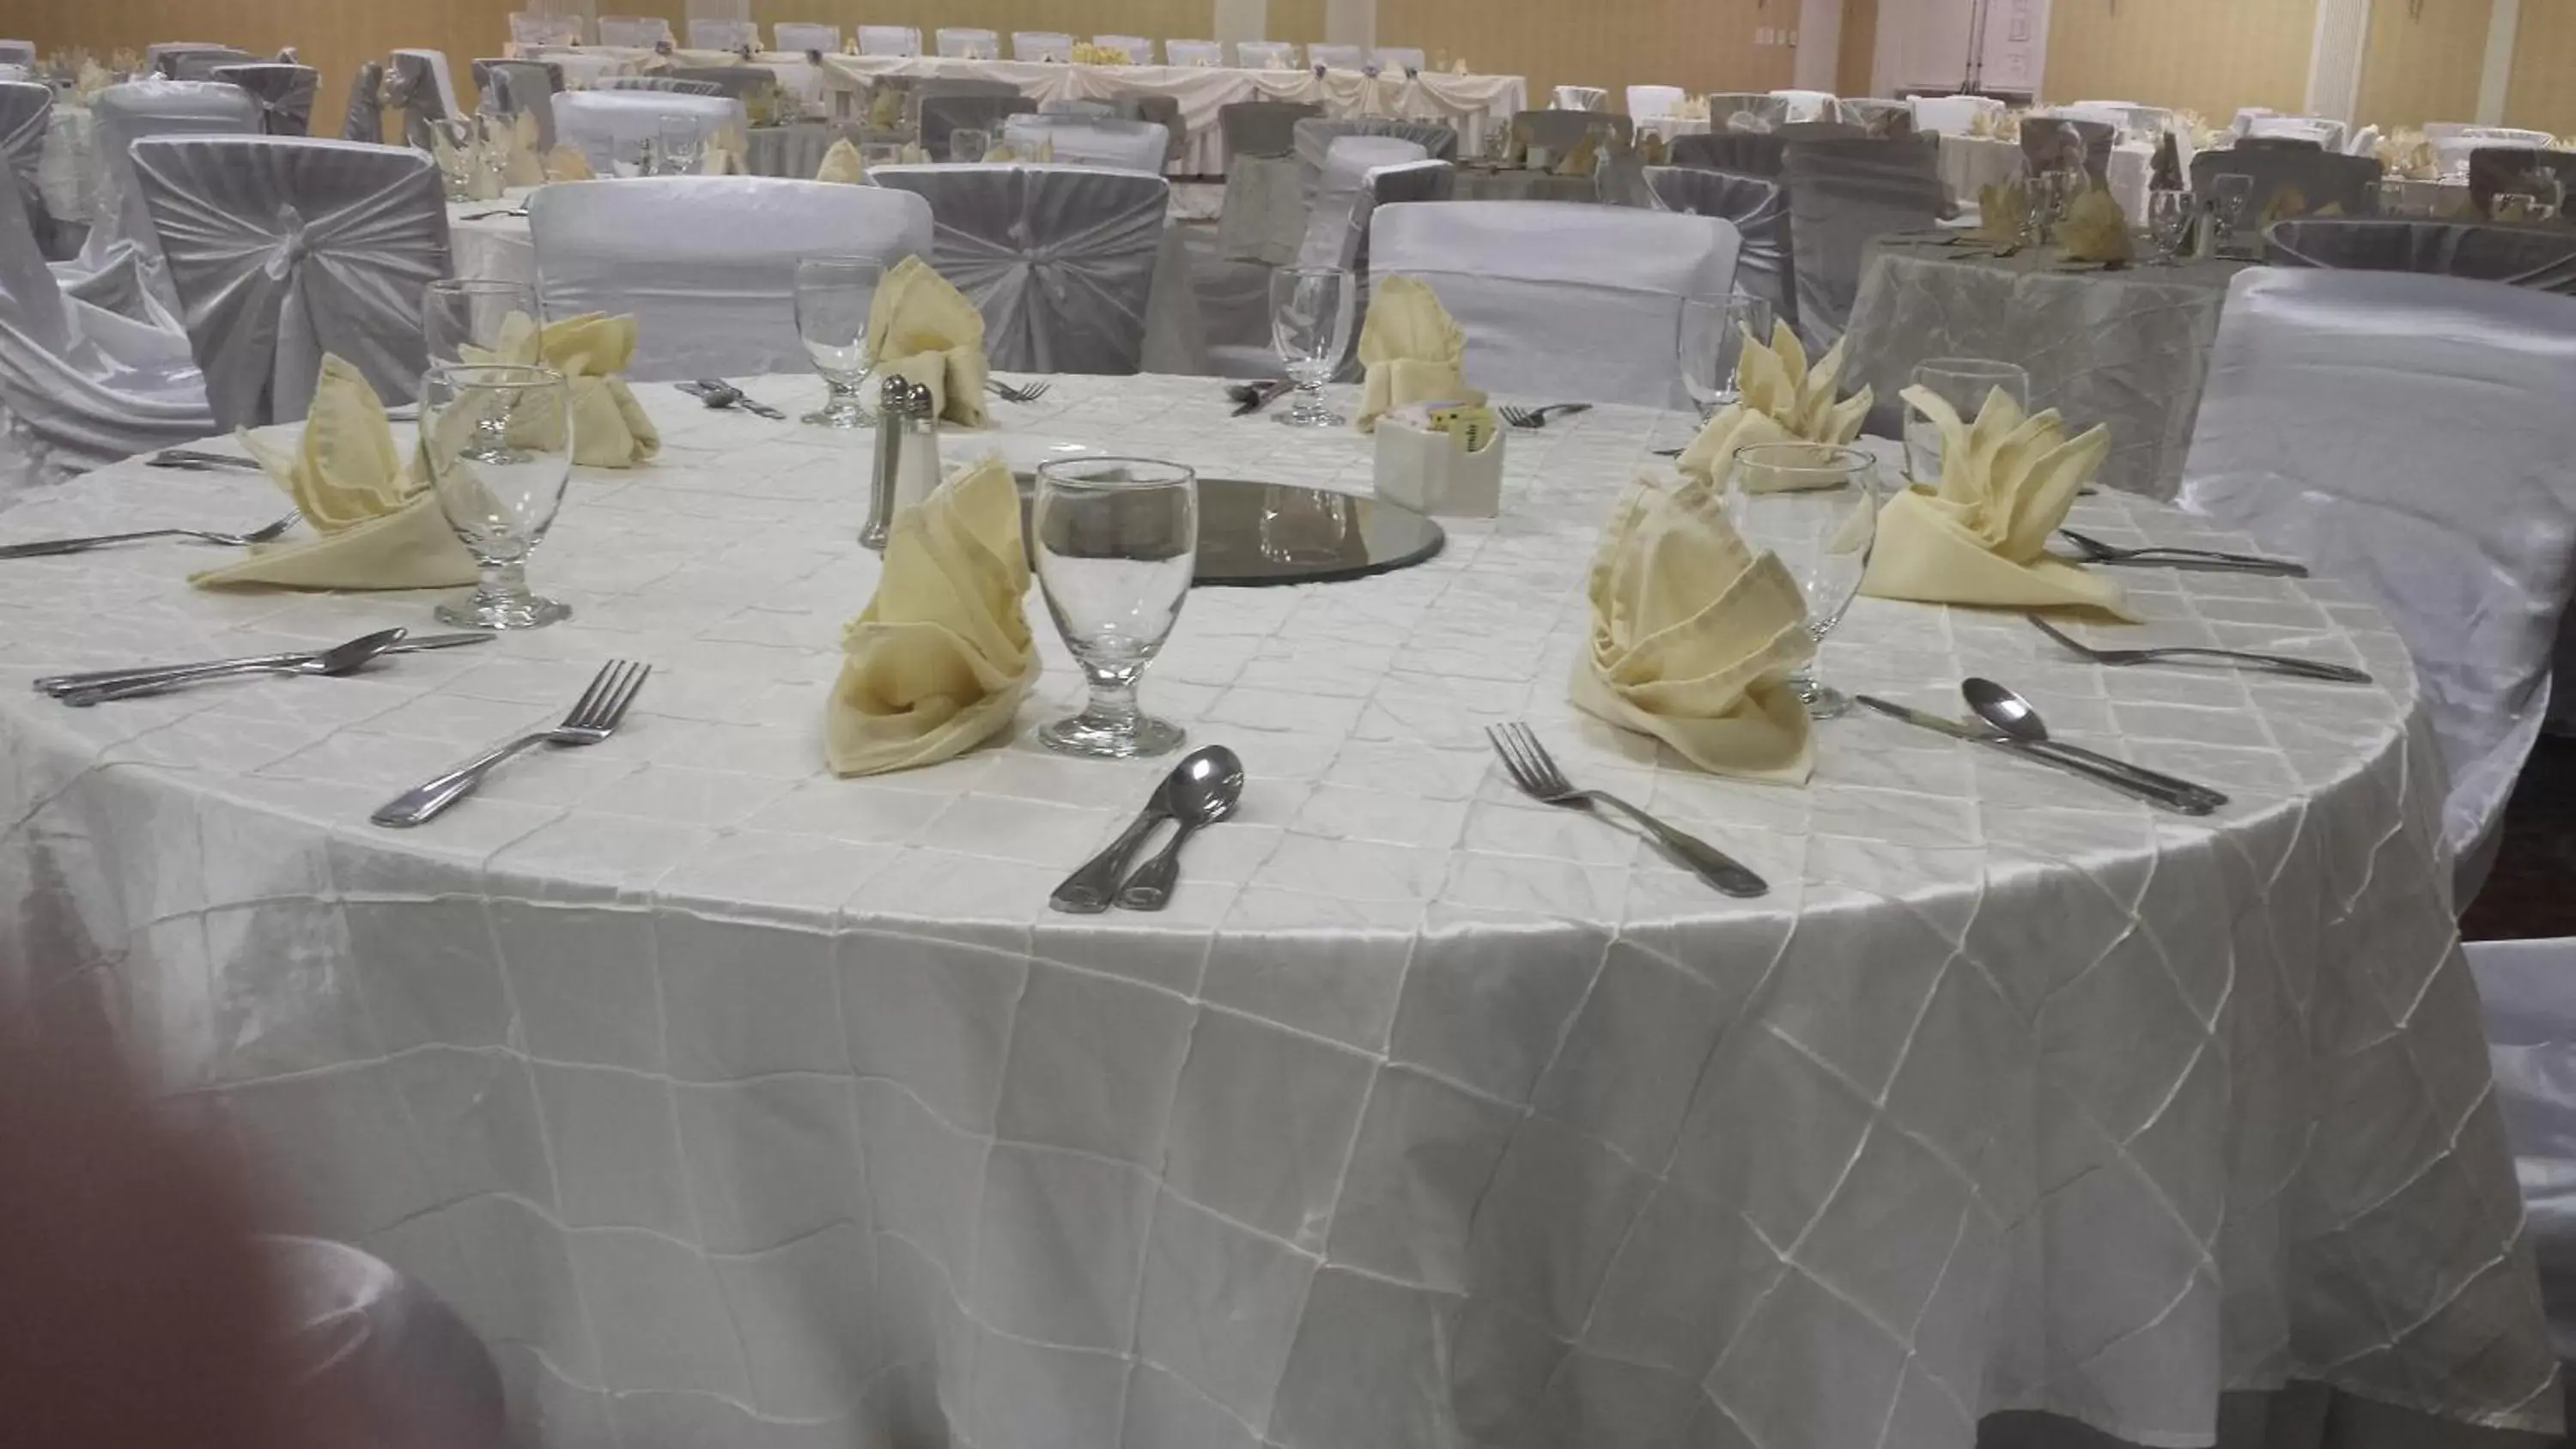 Banquet/Function facilities, Banquet Facilities in Wyndham Garden Manassas